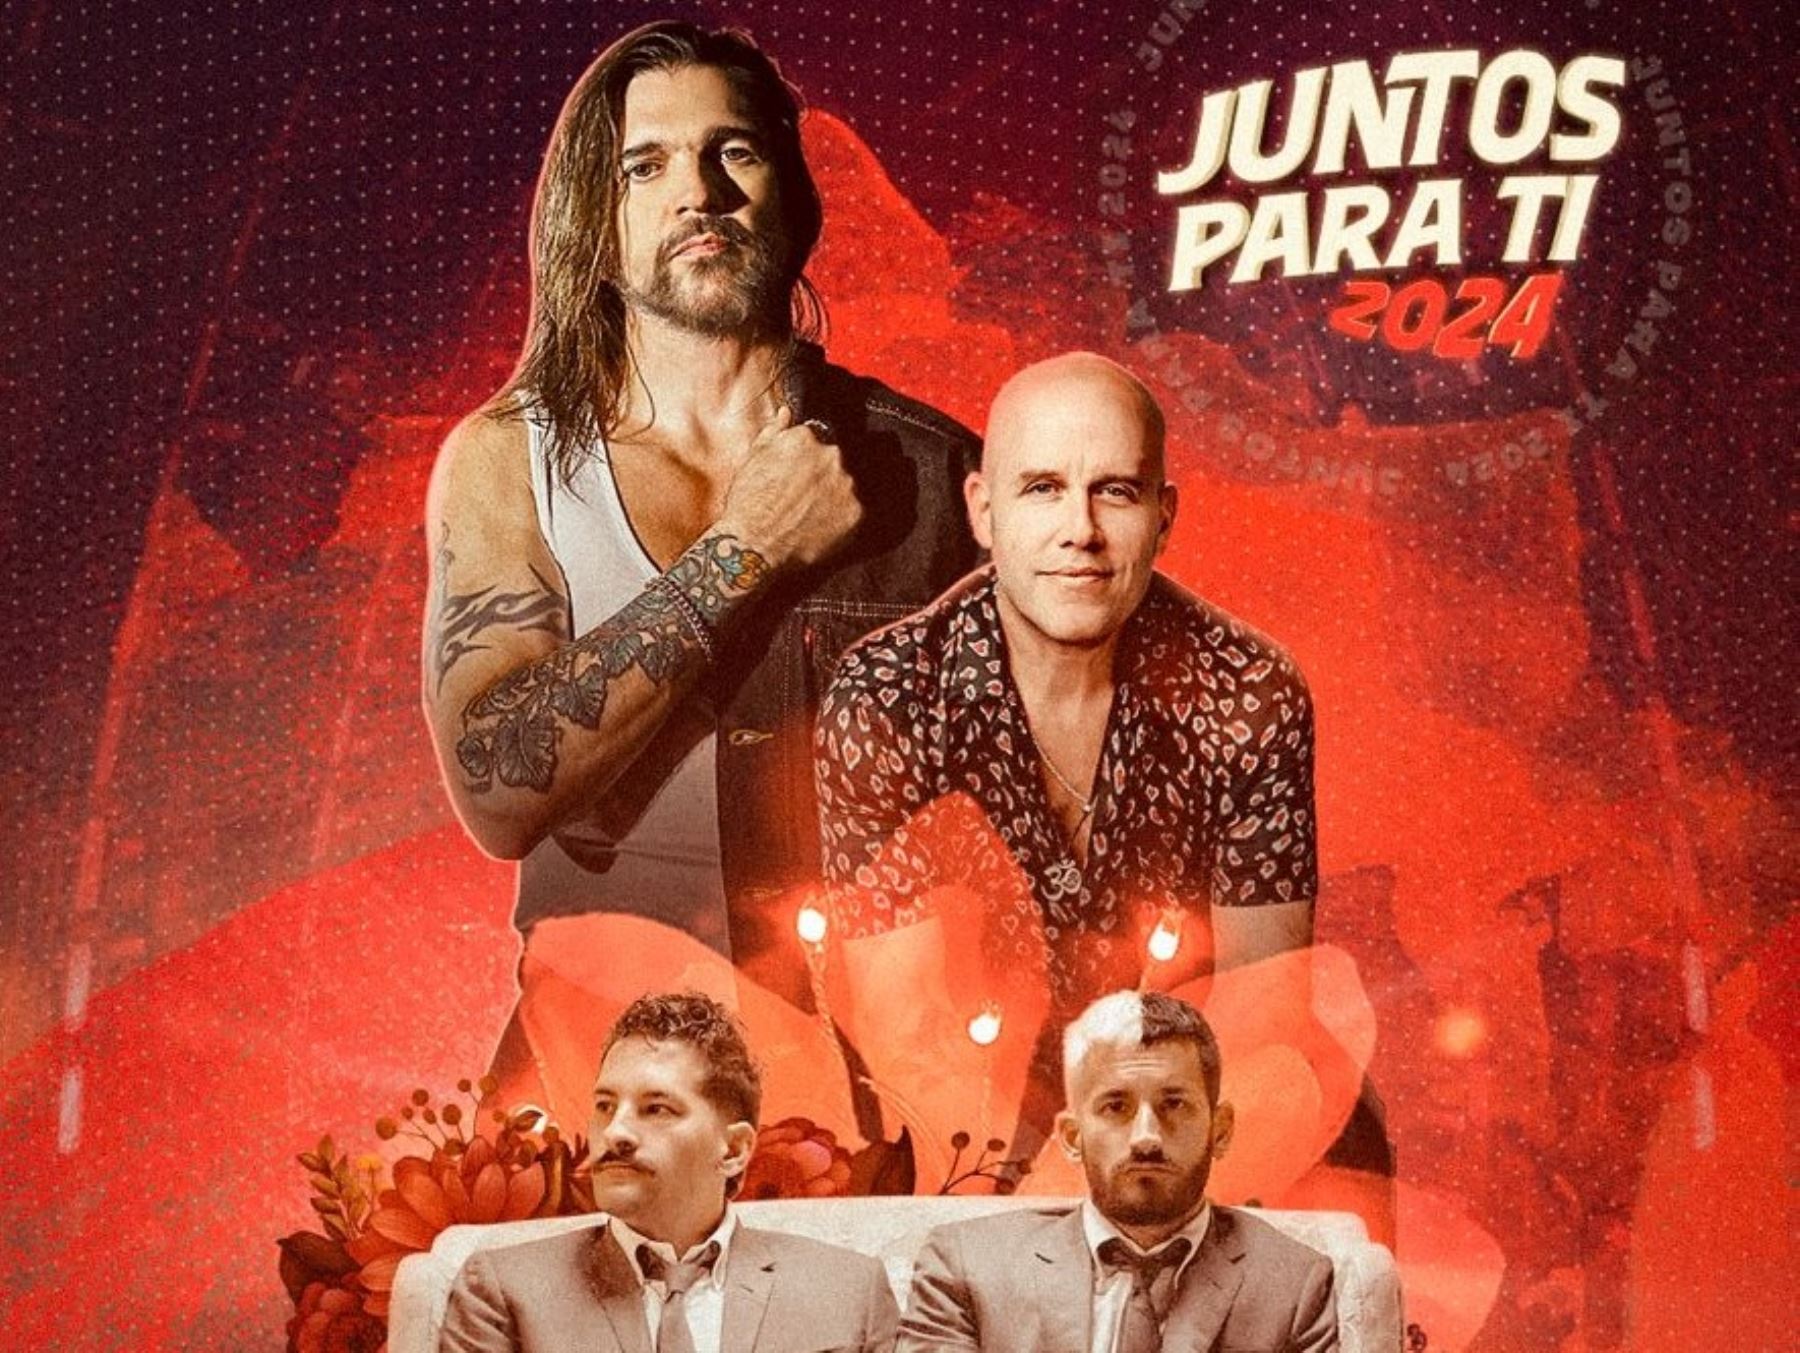 Juanes en "Juntos para ti"  junto a Gian Marco y Mau & Ricky.